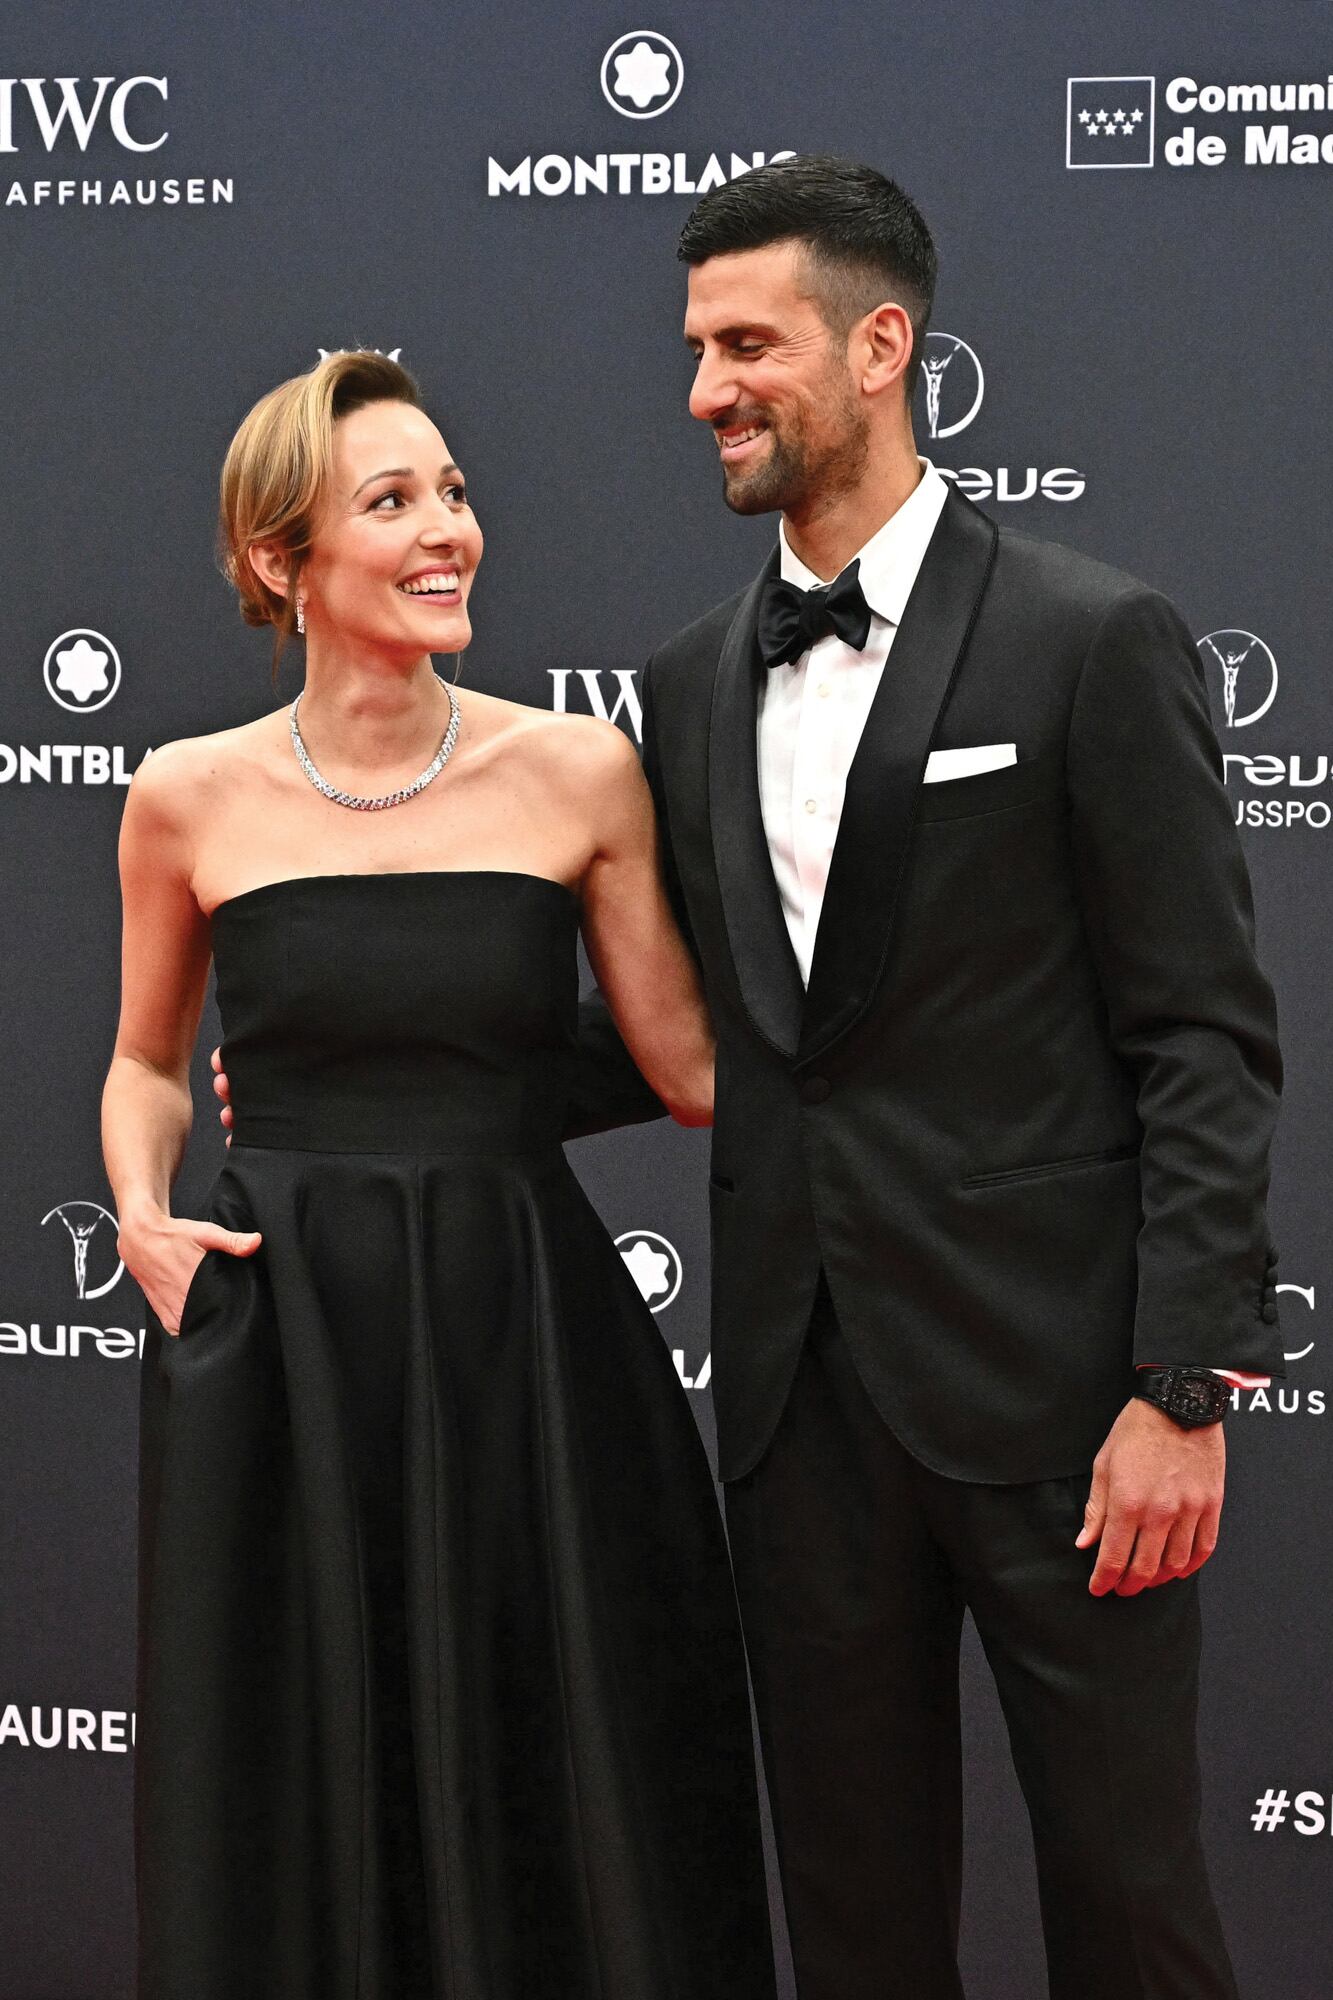 Coordinados con el mismo color, el tenista llevó un smoking con solapas de satén y moño, y su mujer, Jelena Ristic, un vestido con falda amplia y bolsillos.